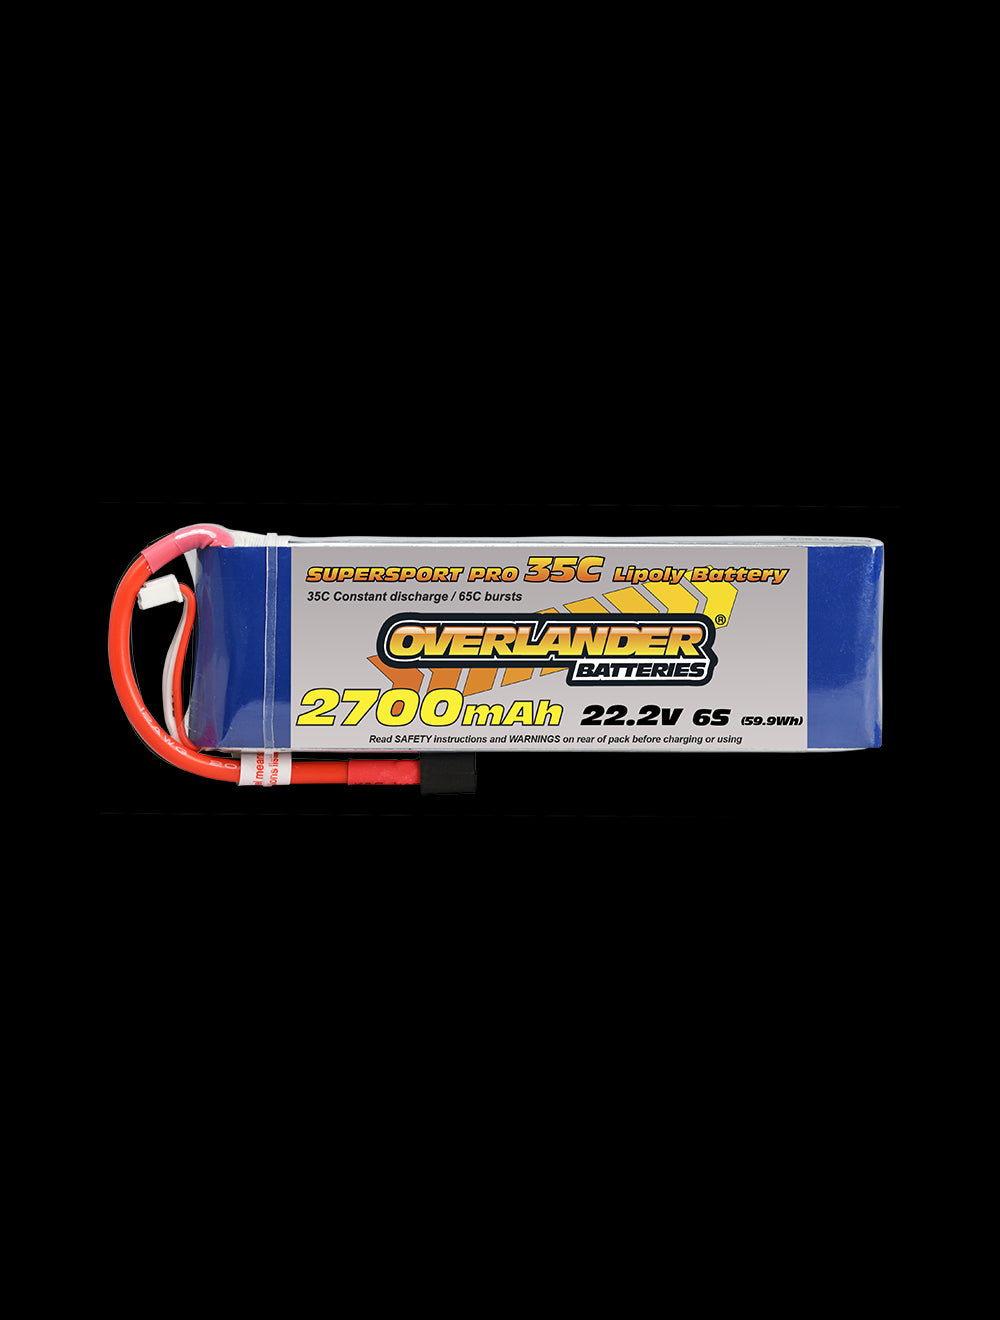 Overlander 2700mAh 22.2V 6S 35C Supersport Pro LiPo Battery - Deans Connector 2482